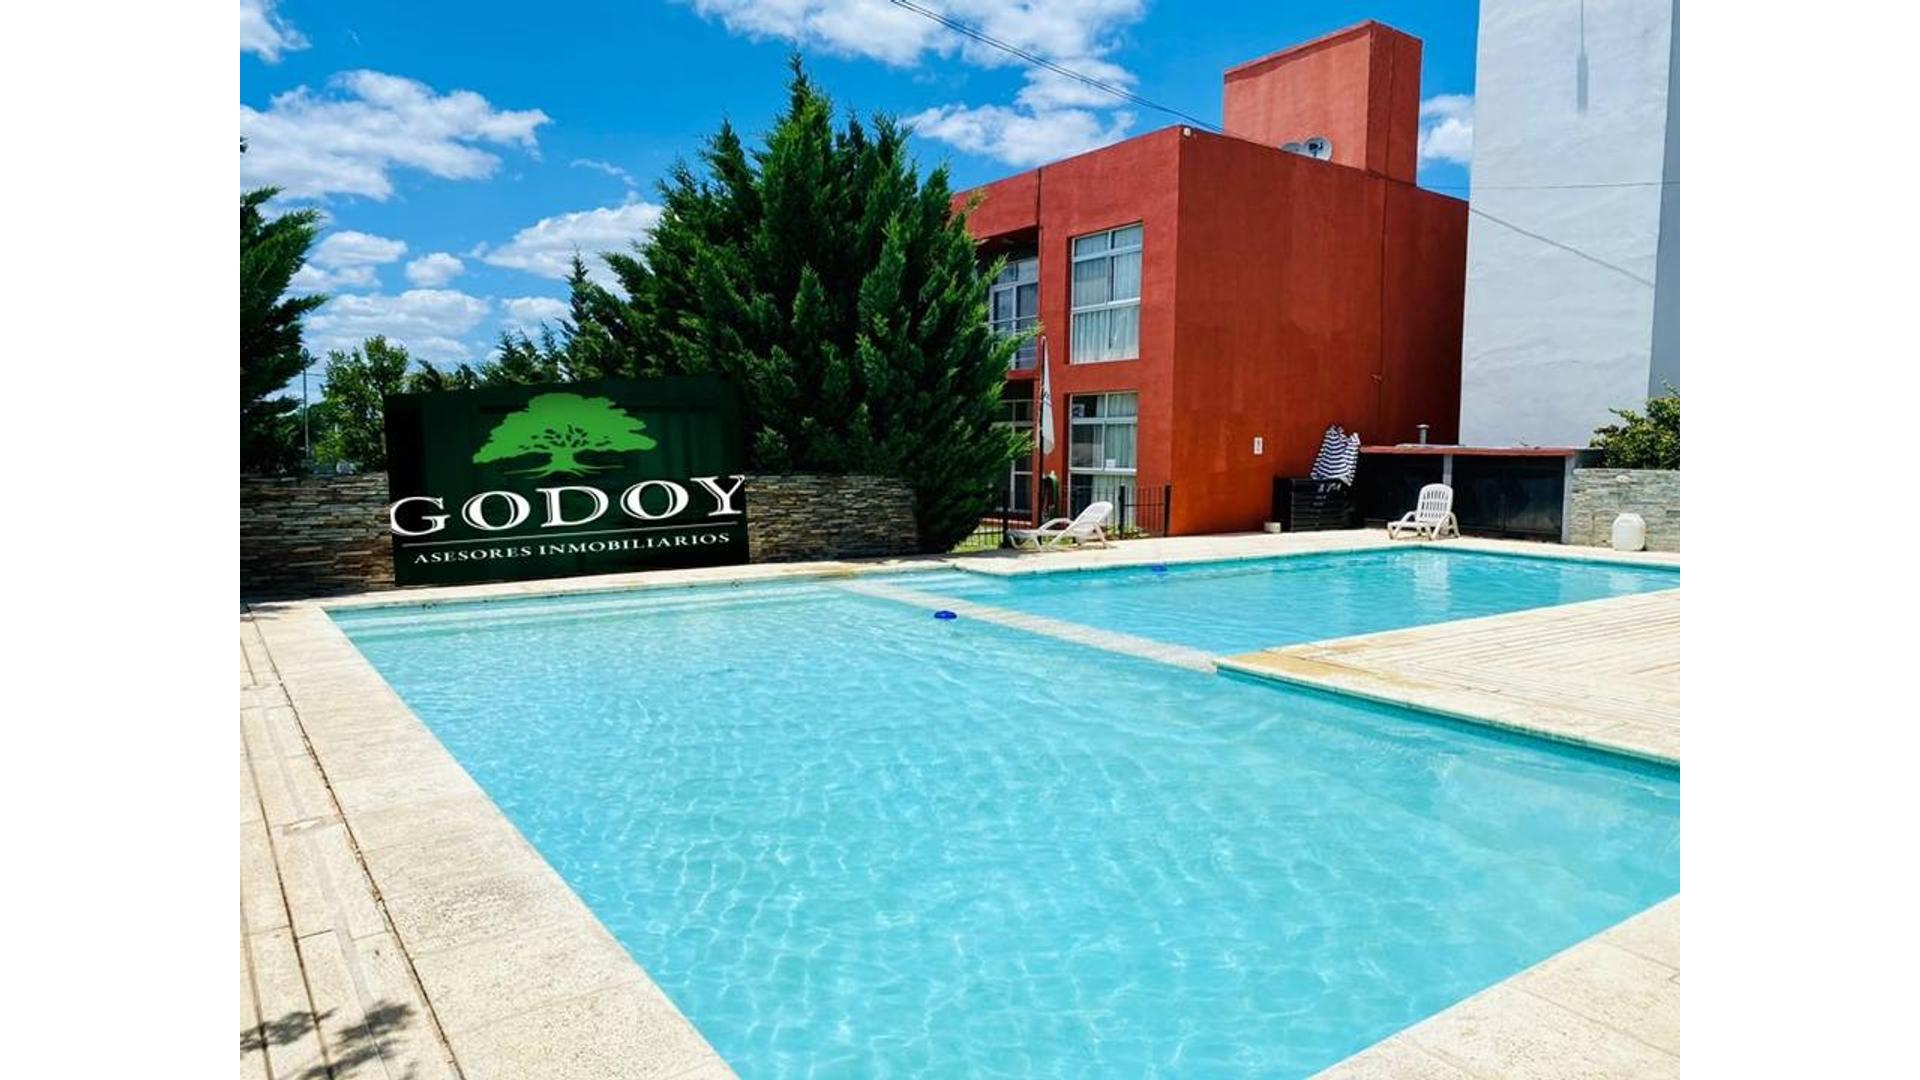 #2356312 | Sale | Hotel | Colon (Godoy Asesores Inmobiliarios)